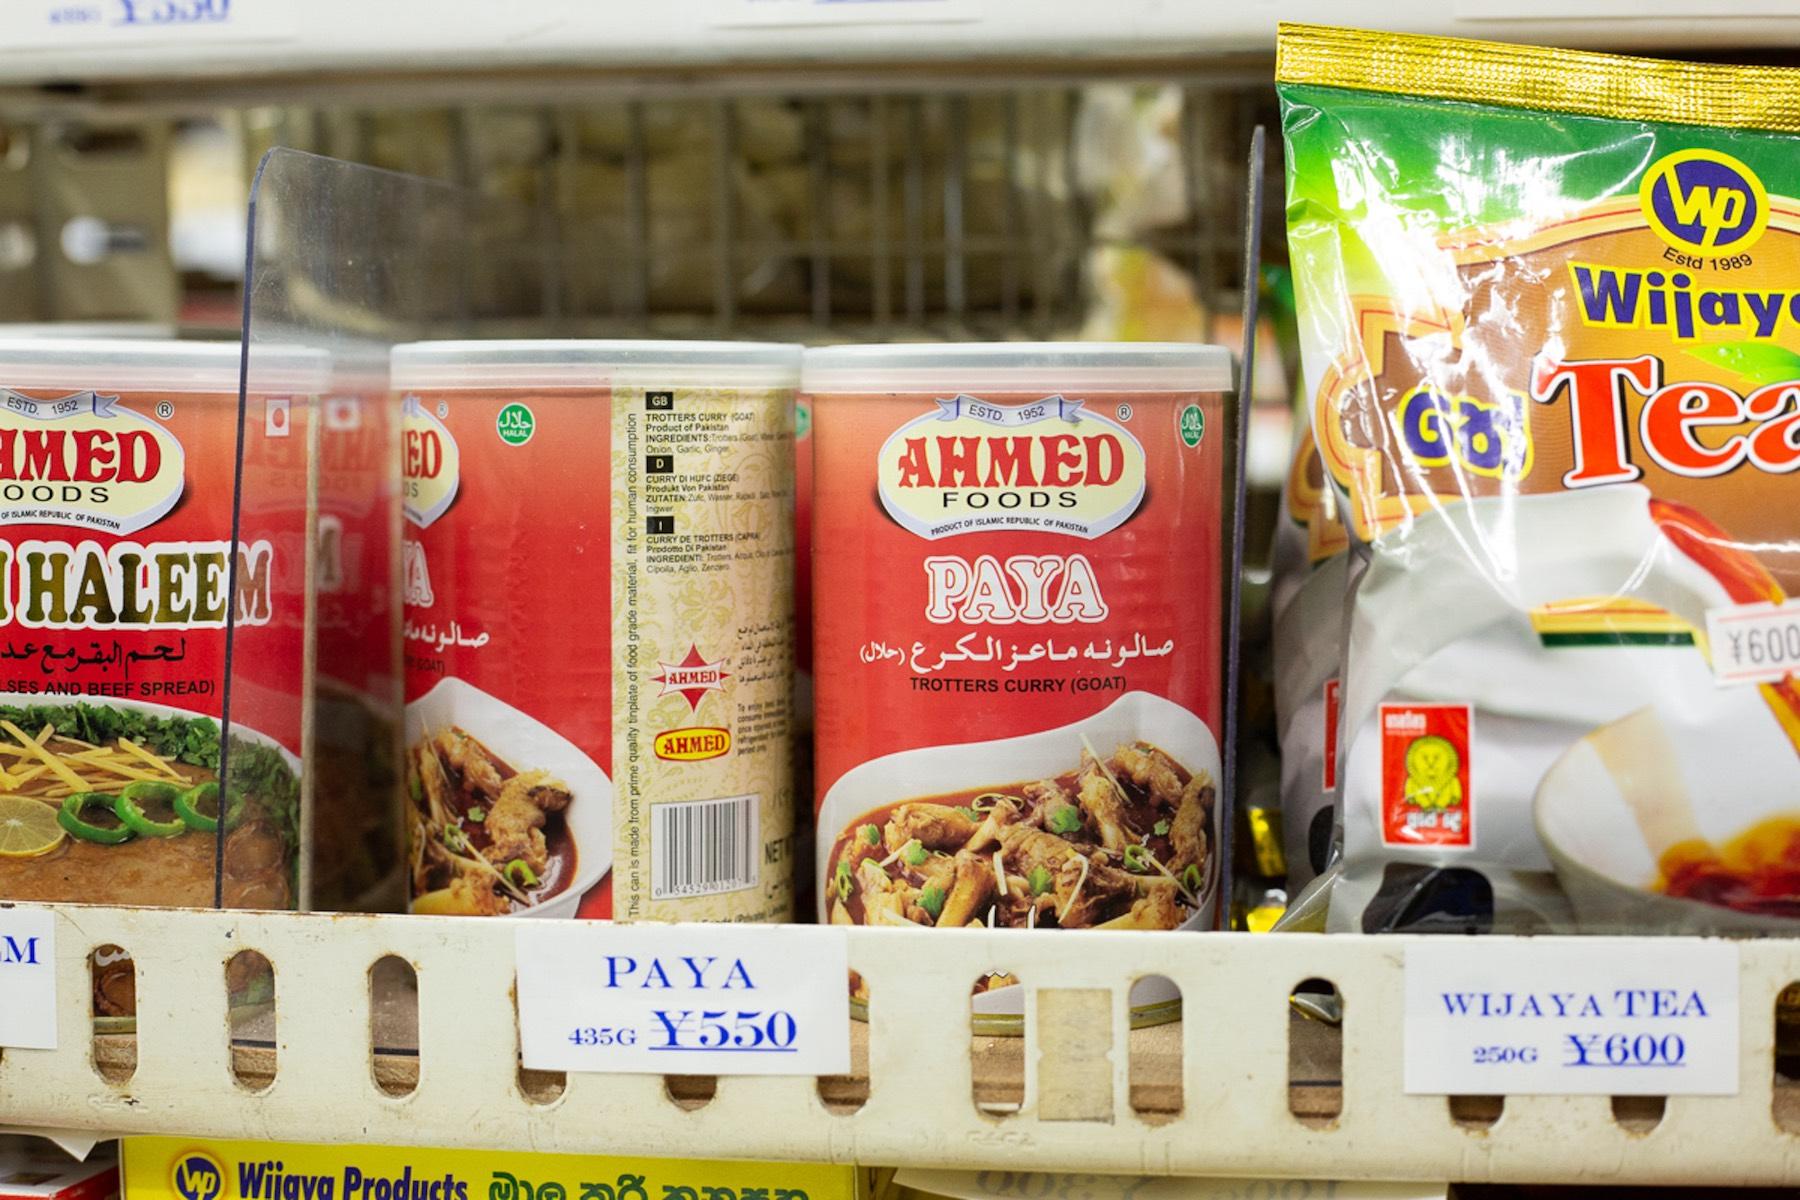 パキスタンの人気ブランド“AHMED”製の缶詰のパヤ（羊の足カレー）とハリーム（牛と豆のカレー）も「ジャンナット ハラルフード」で売られていた。